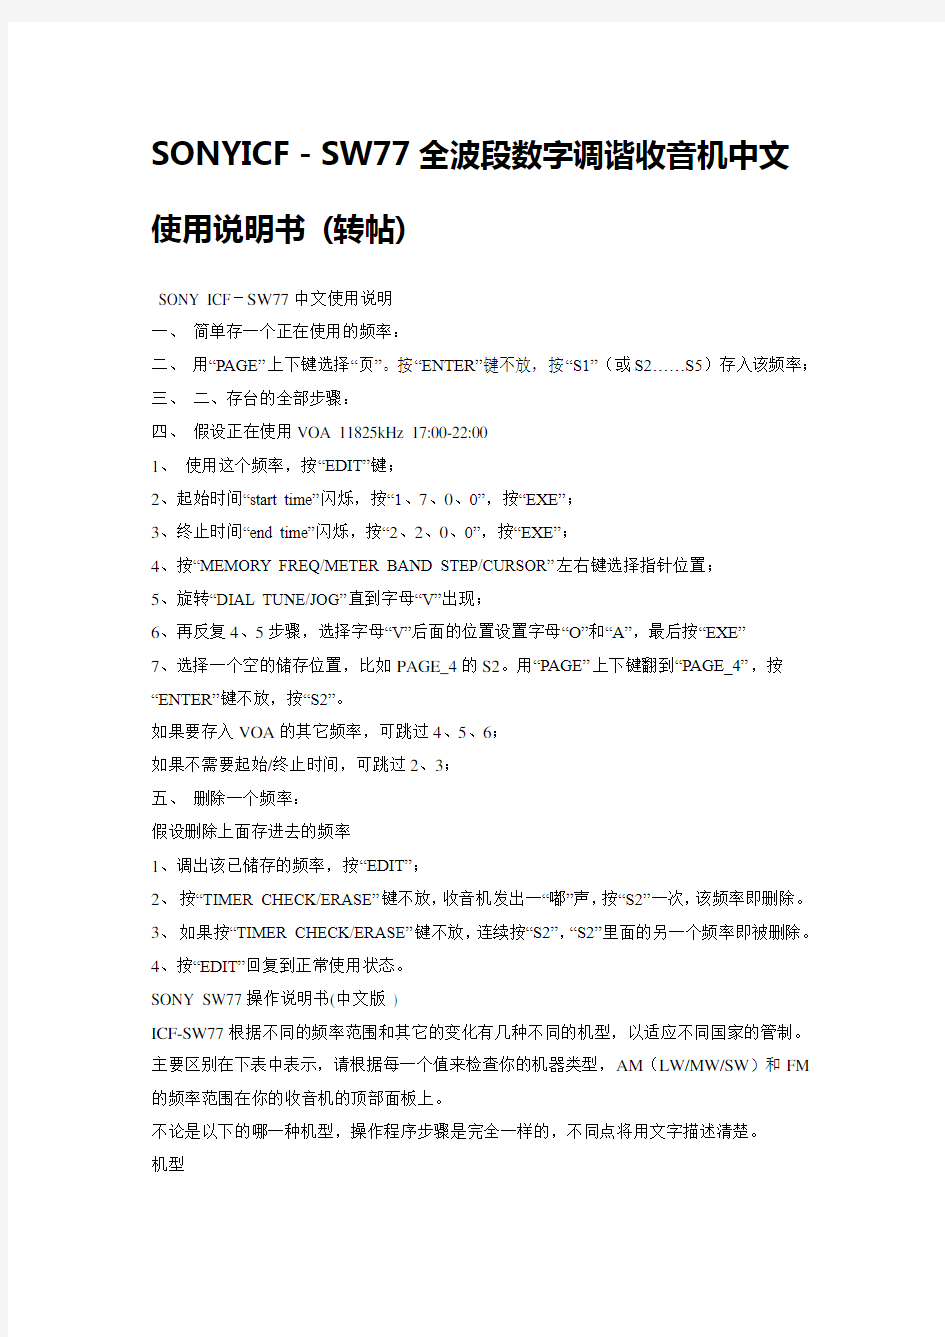 索尼收音机SW77使用说明书(中文版)